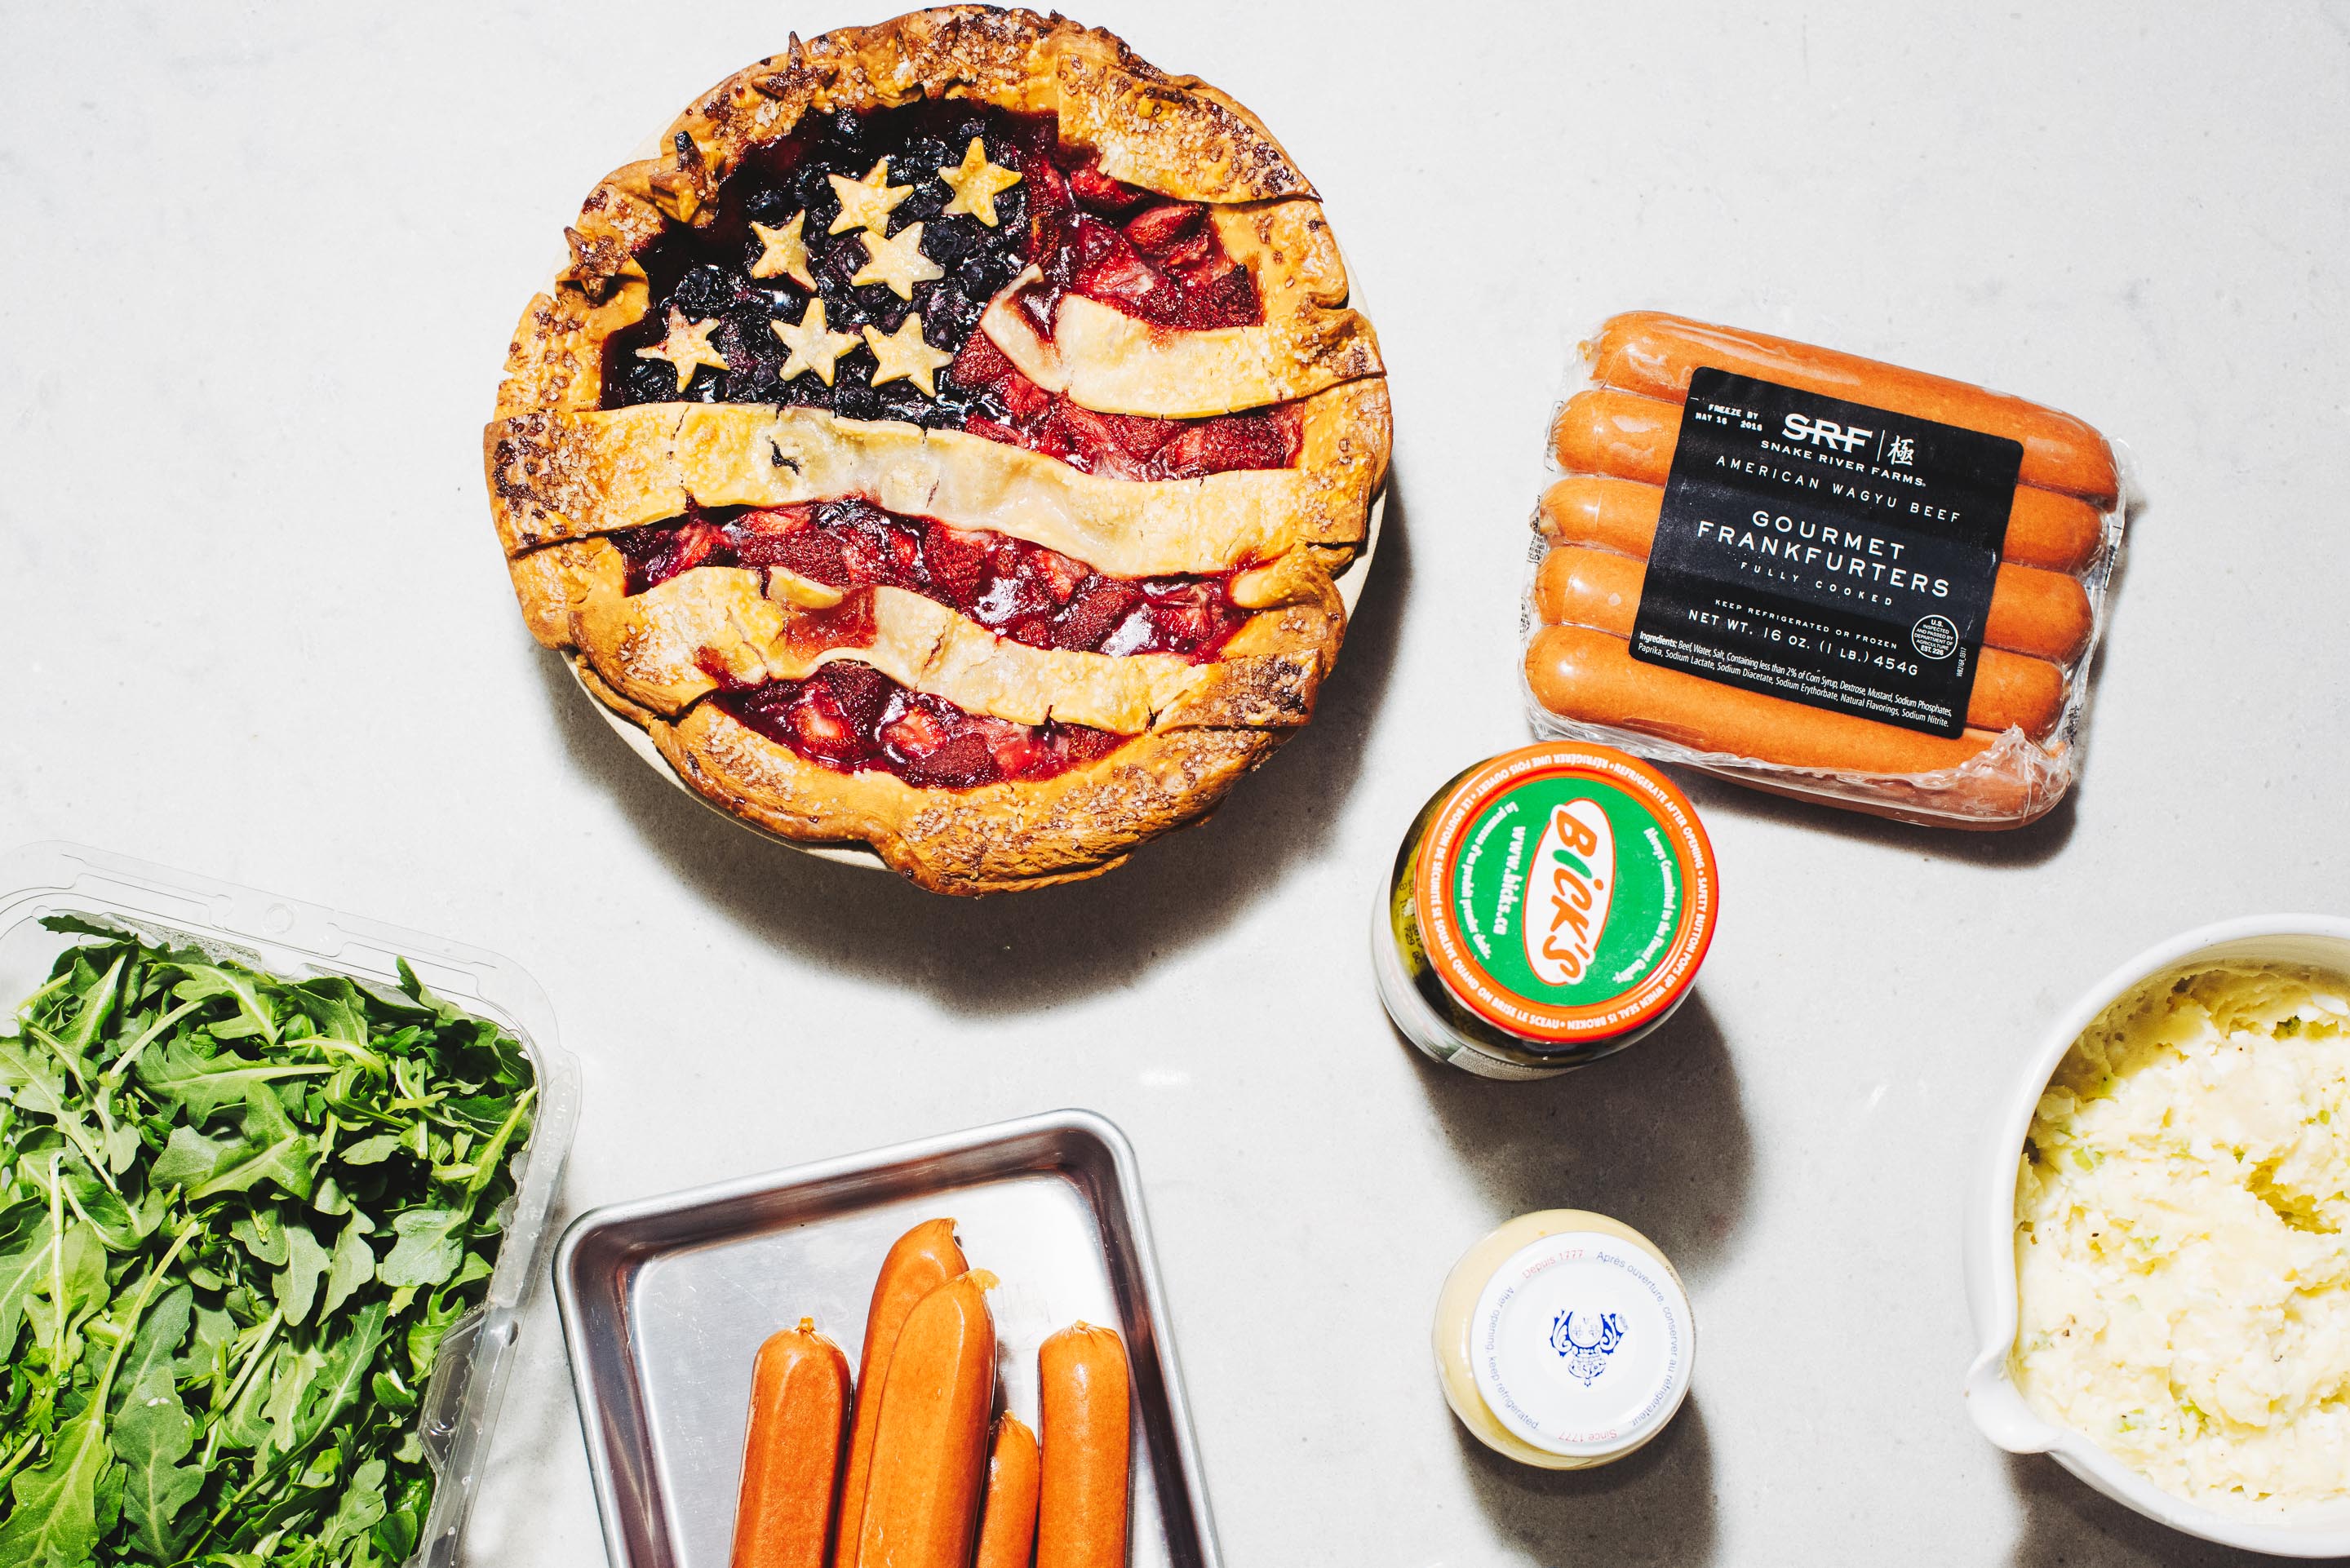 American Flag Pie Recipe